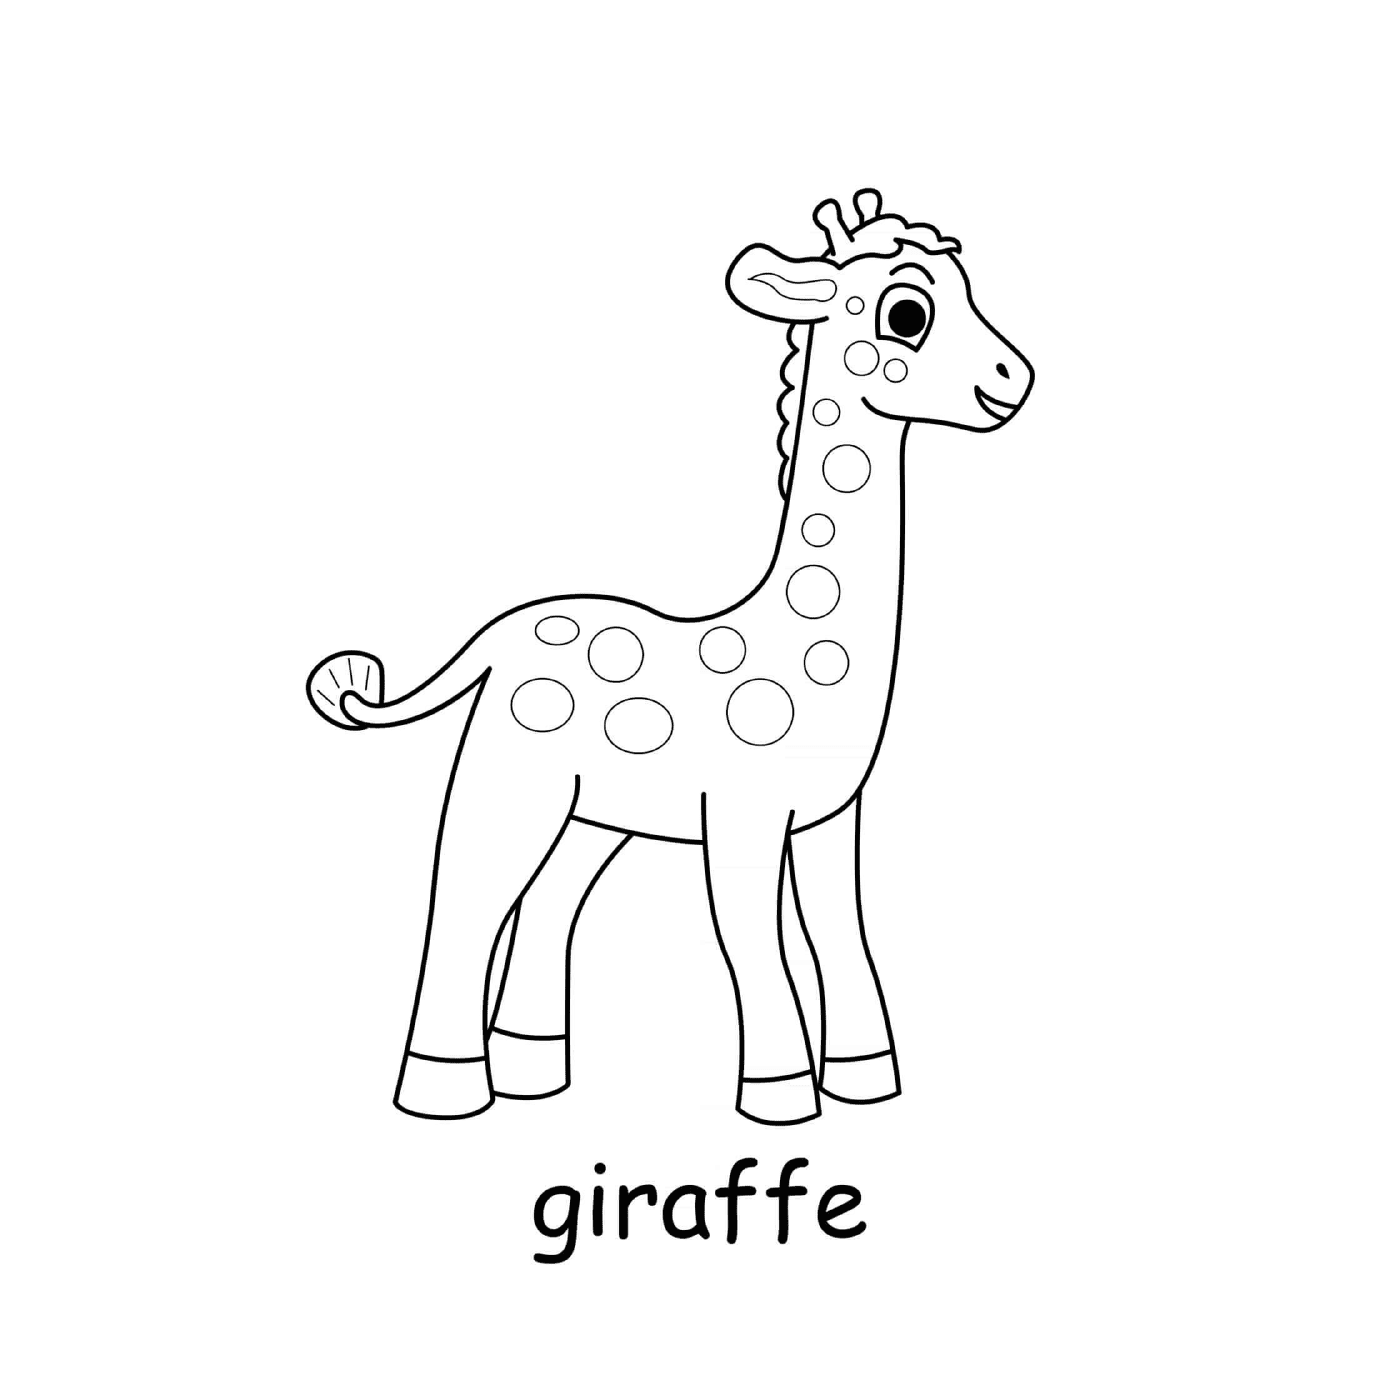  Girafe della savana africana 